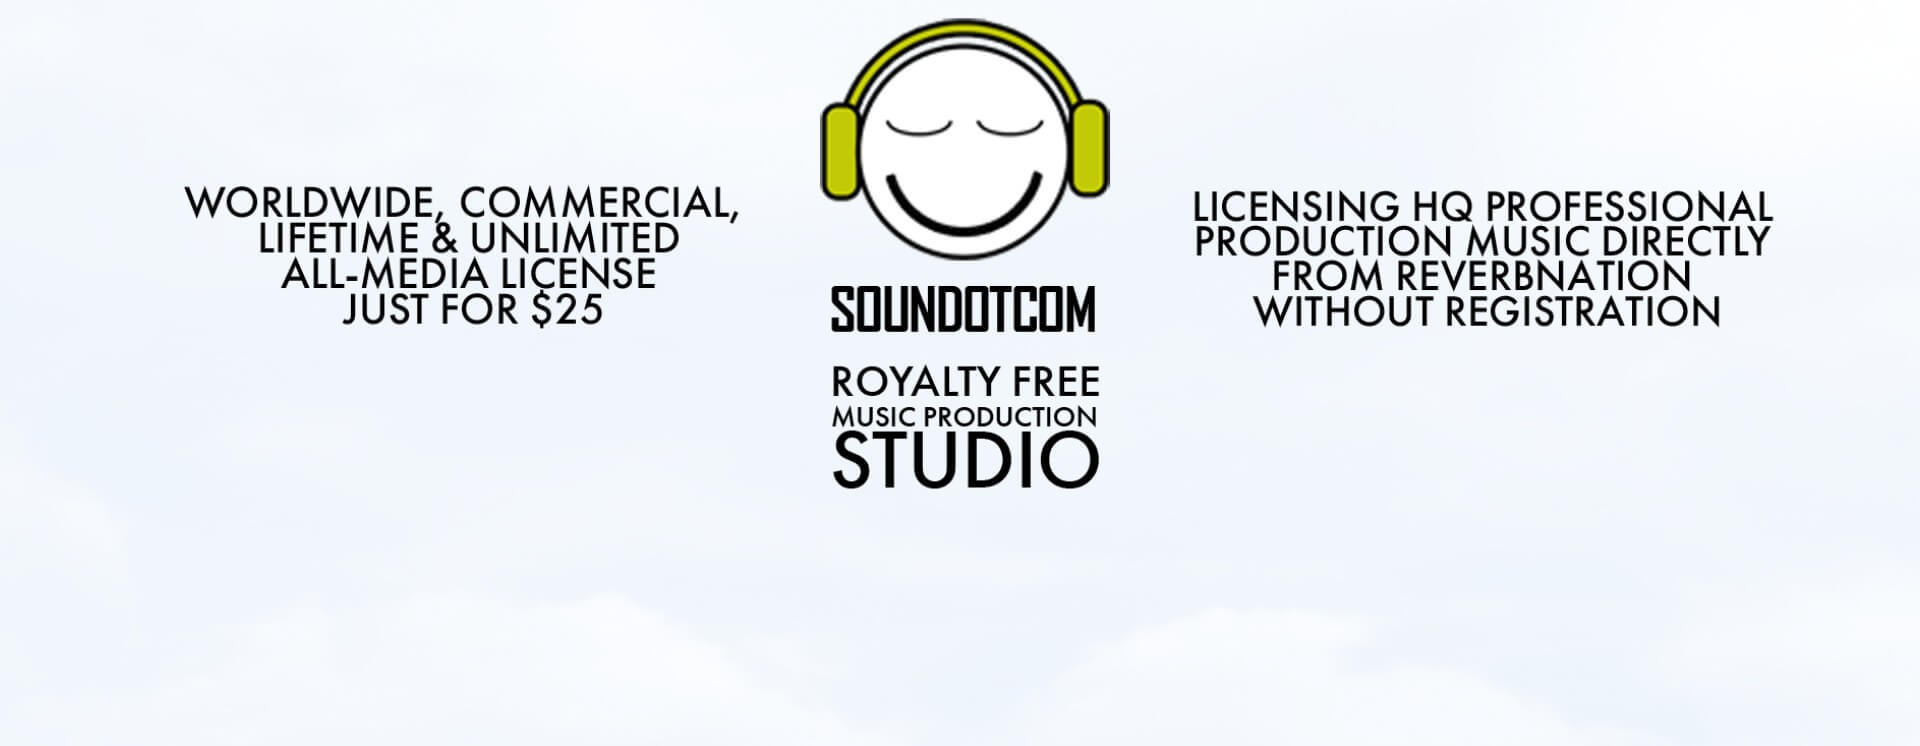 Soundotcom logo